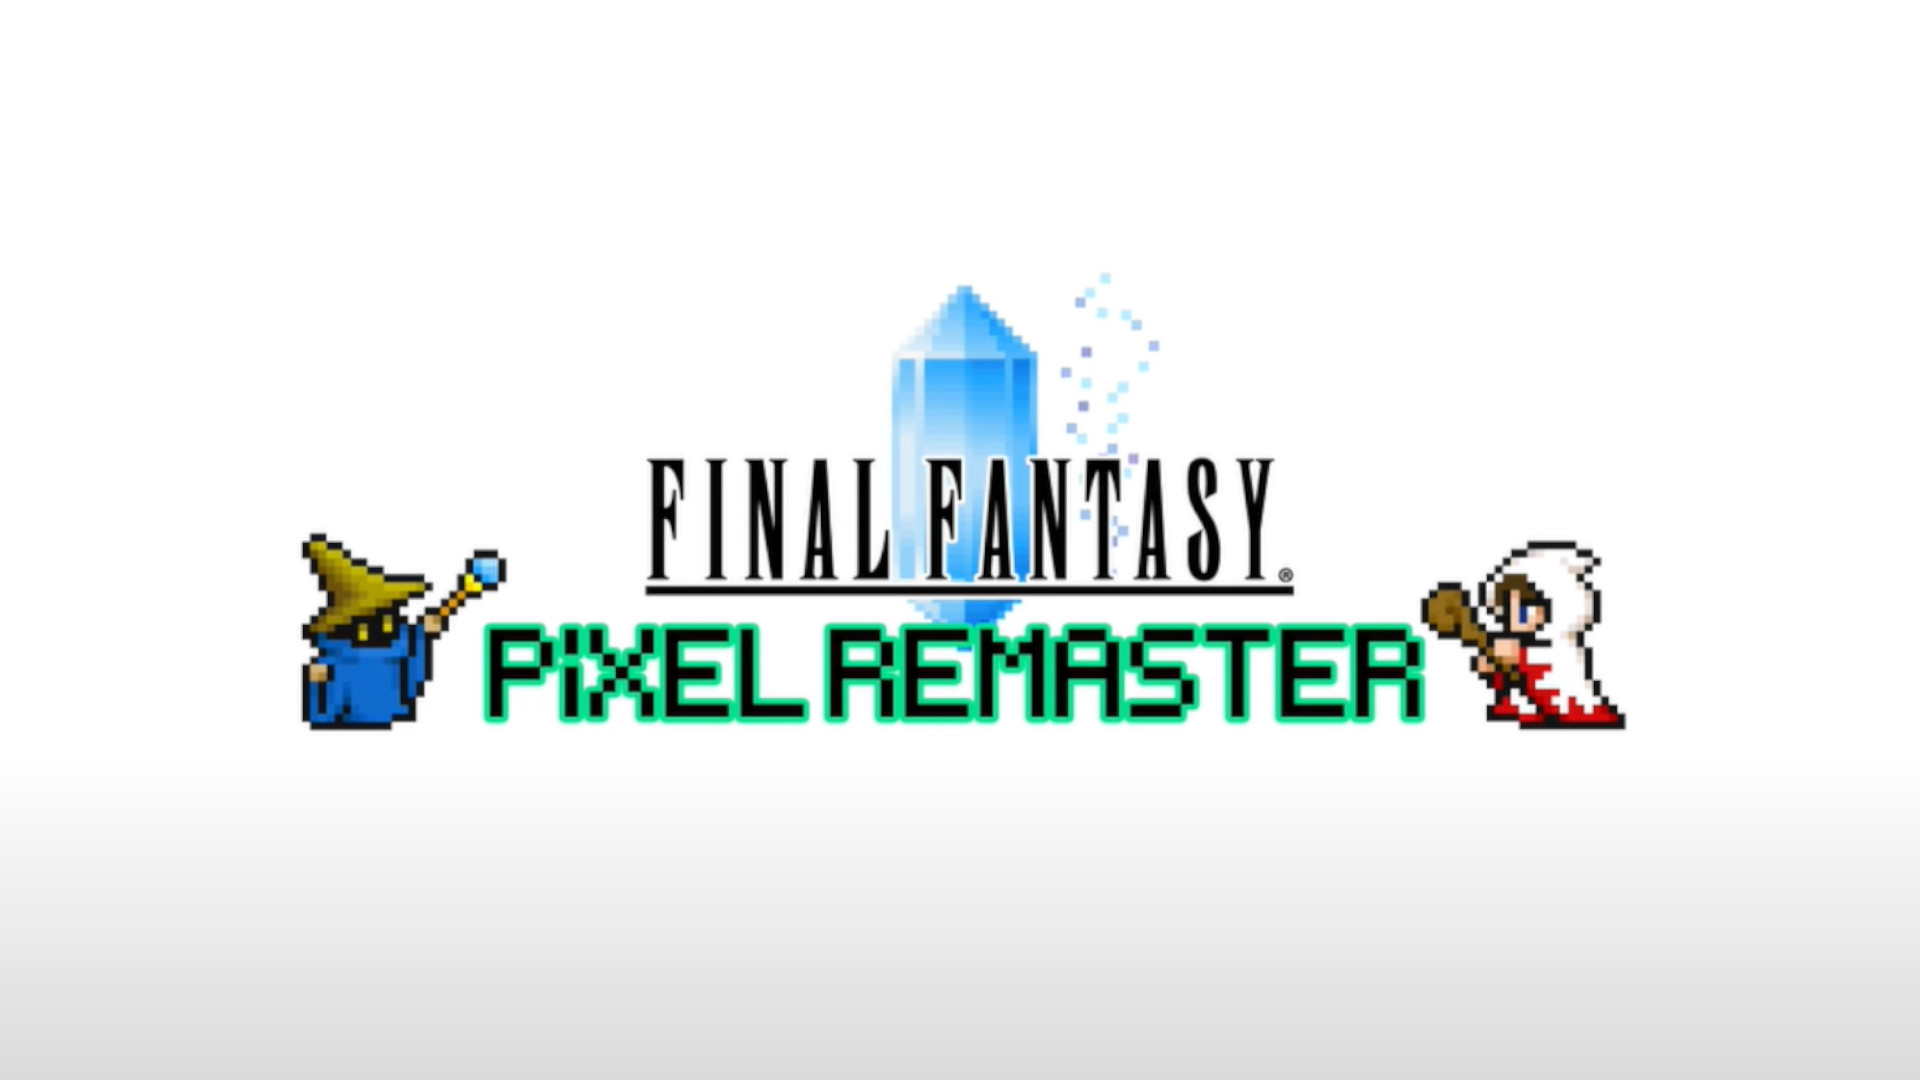 Ny lalao Final Fantasy Pixel Remaster dia manomboka amin'ny volana ho avy